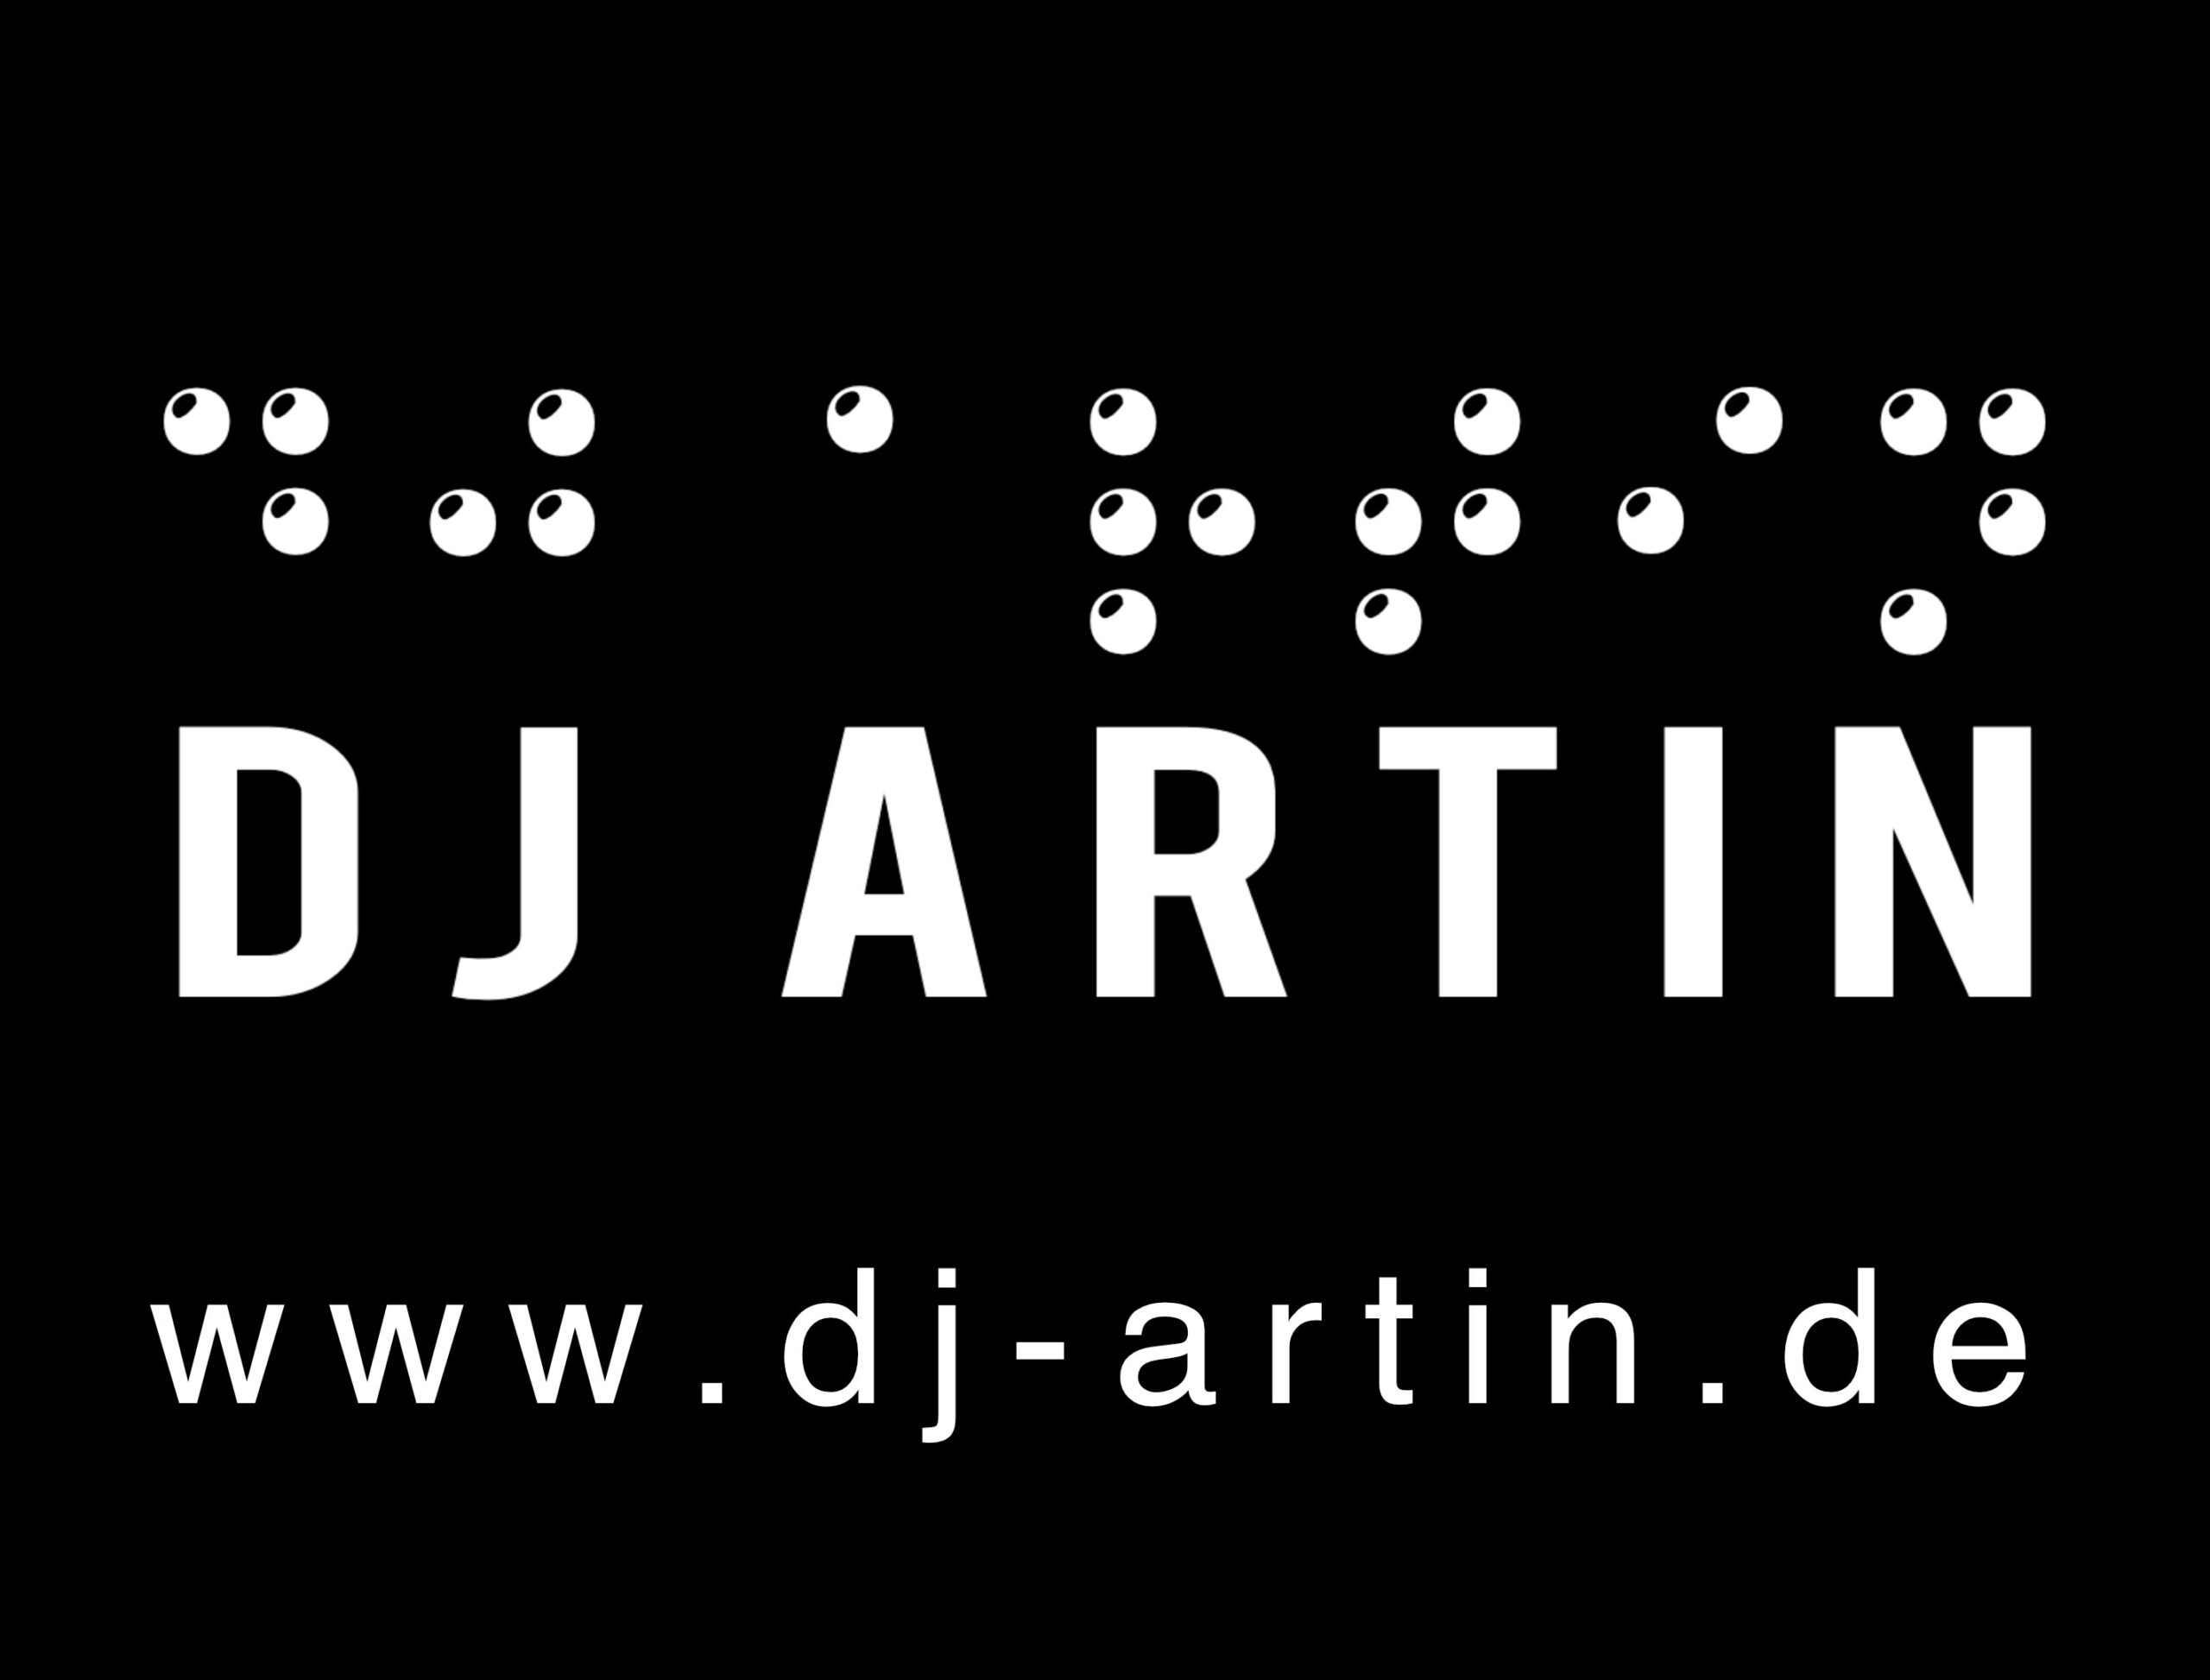 Logo DJ Artin: Weiß auf schwarz mit Brailleschrift. djartin.de